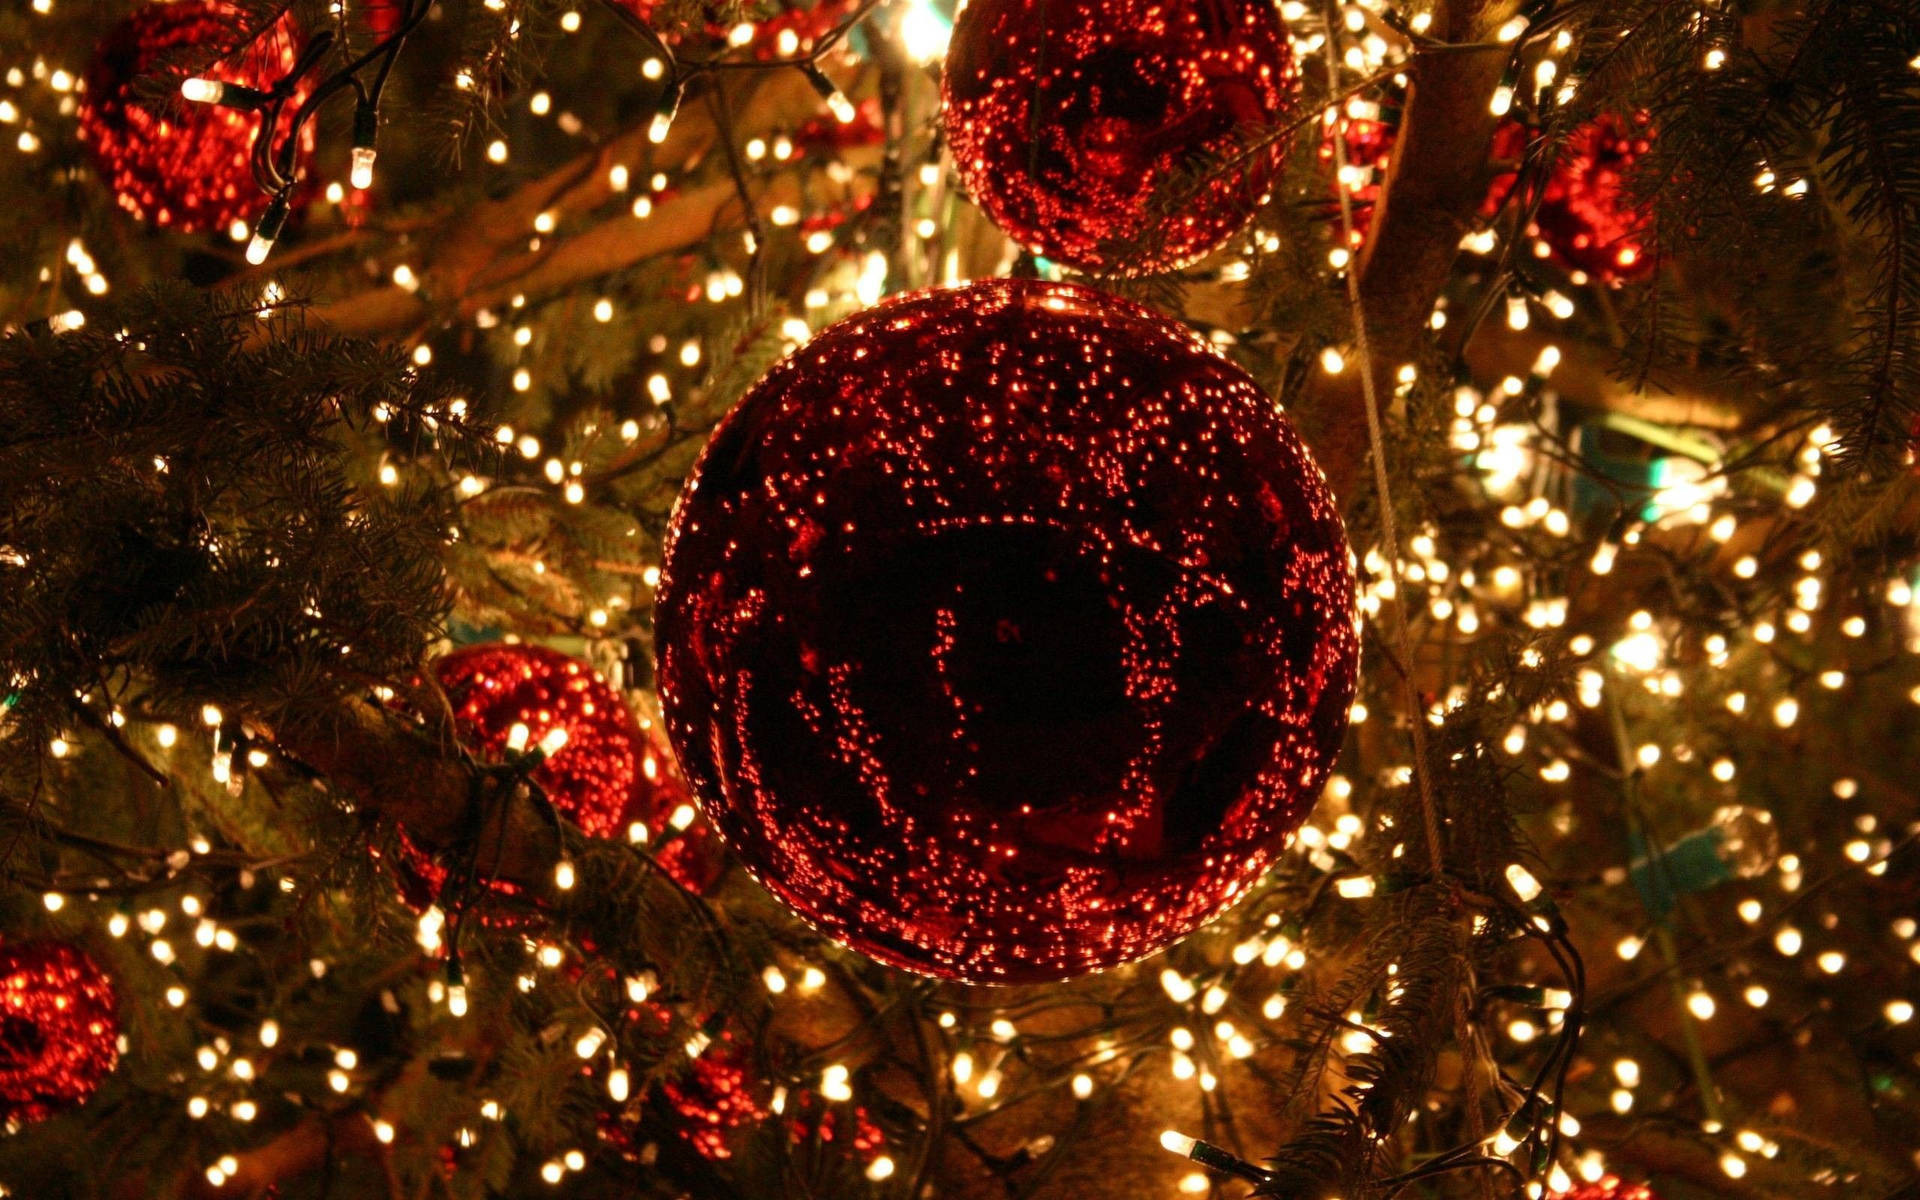 Upplevden Magiska Känslan Av Julen Med Dessa Vackra Ljus På Dator- Eller Mobilskärmen! Wallpaper